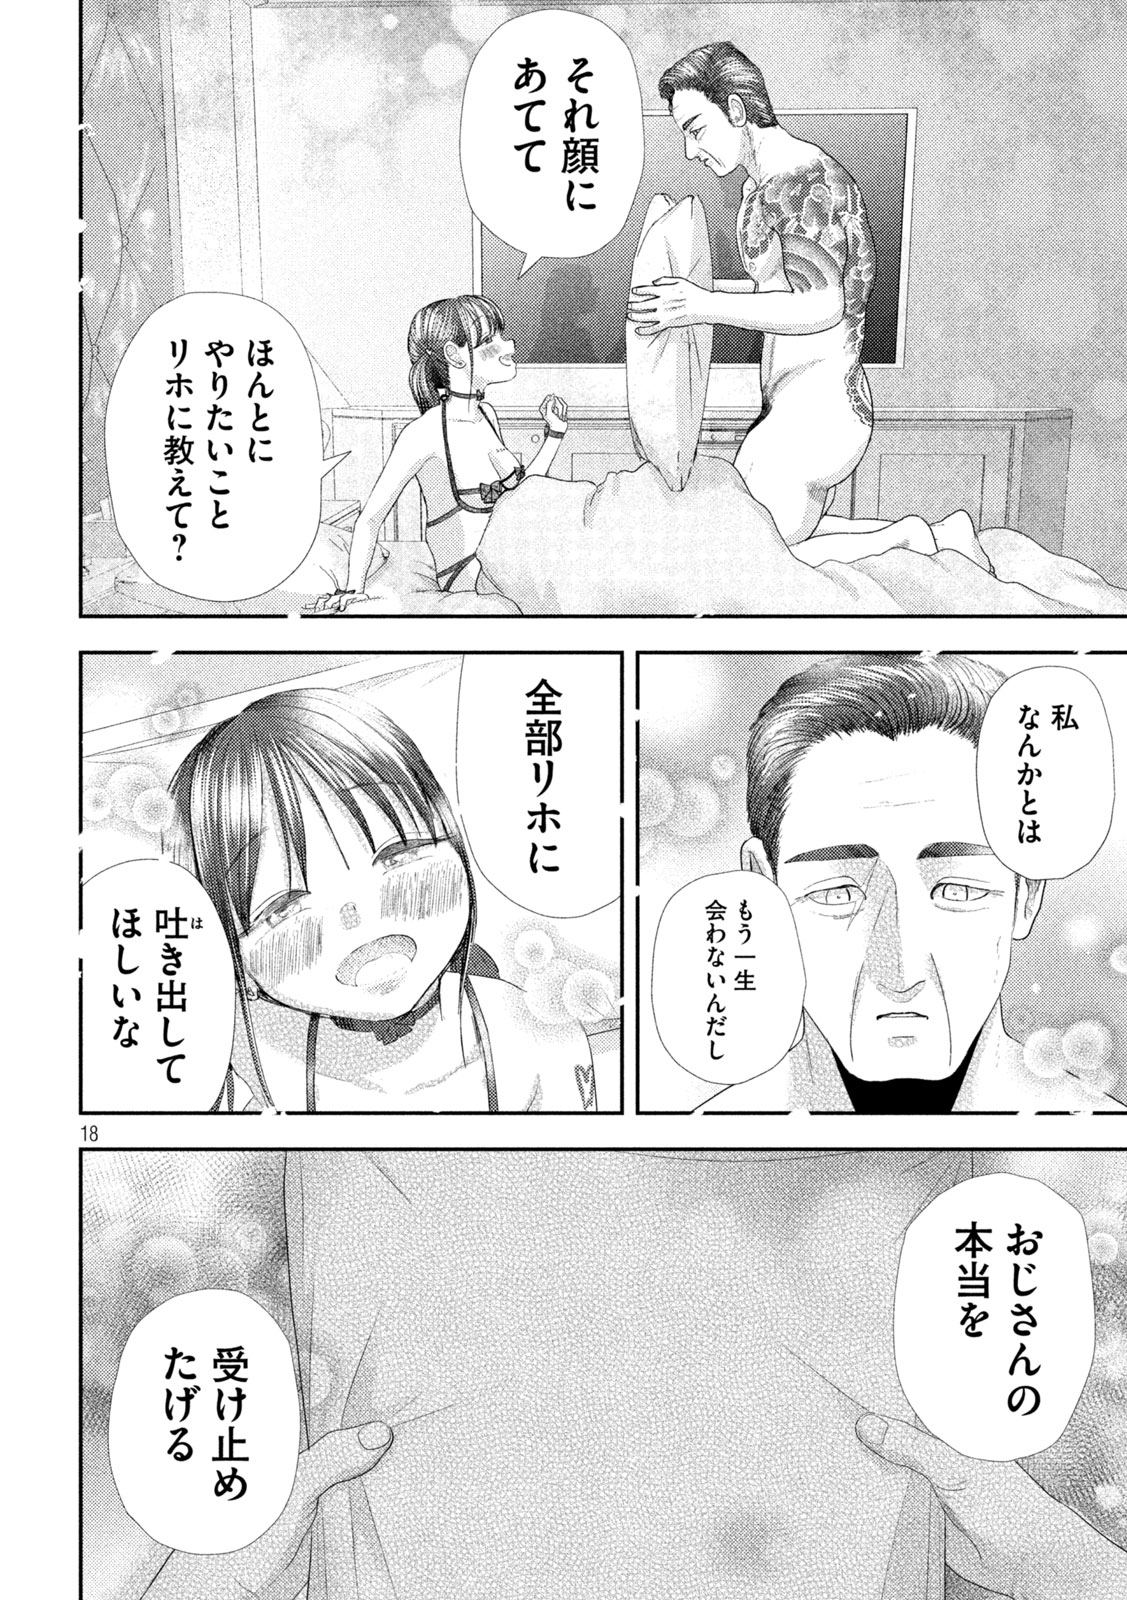 Nezumi no Koi - Chapter 30 - Page 18